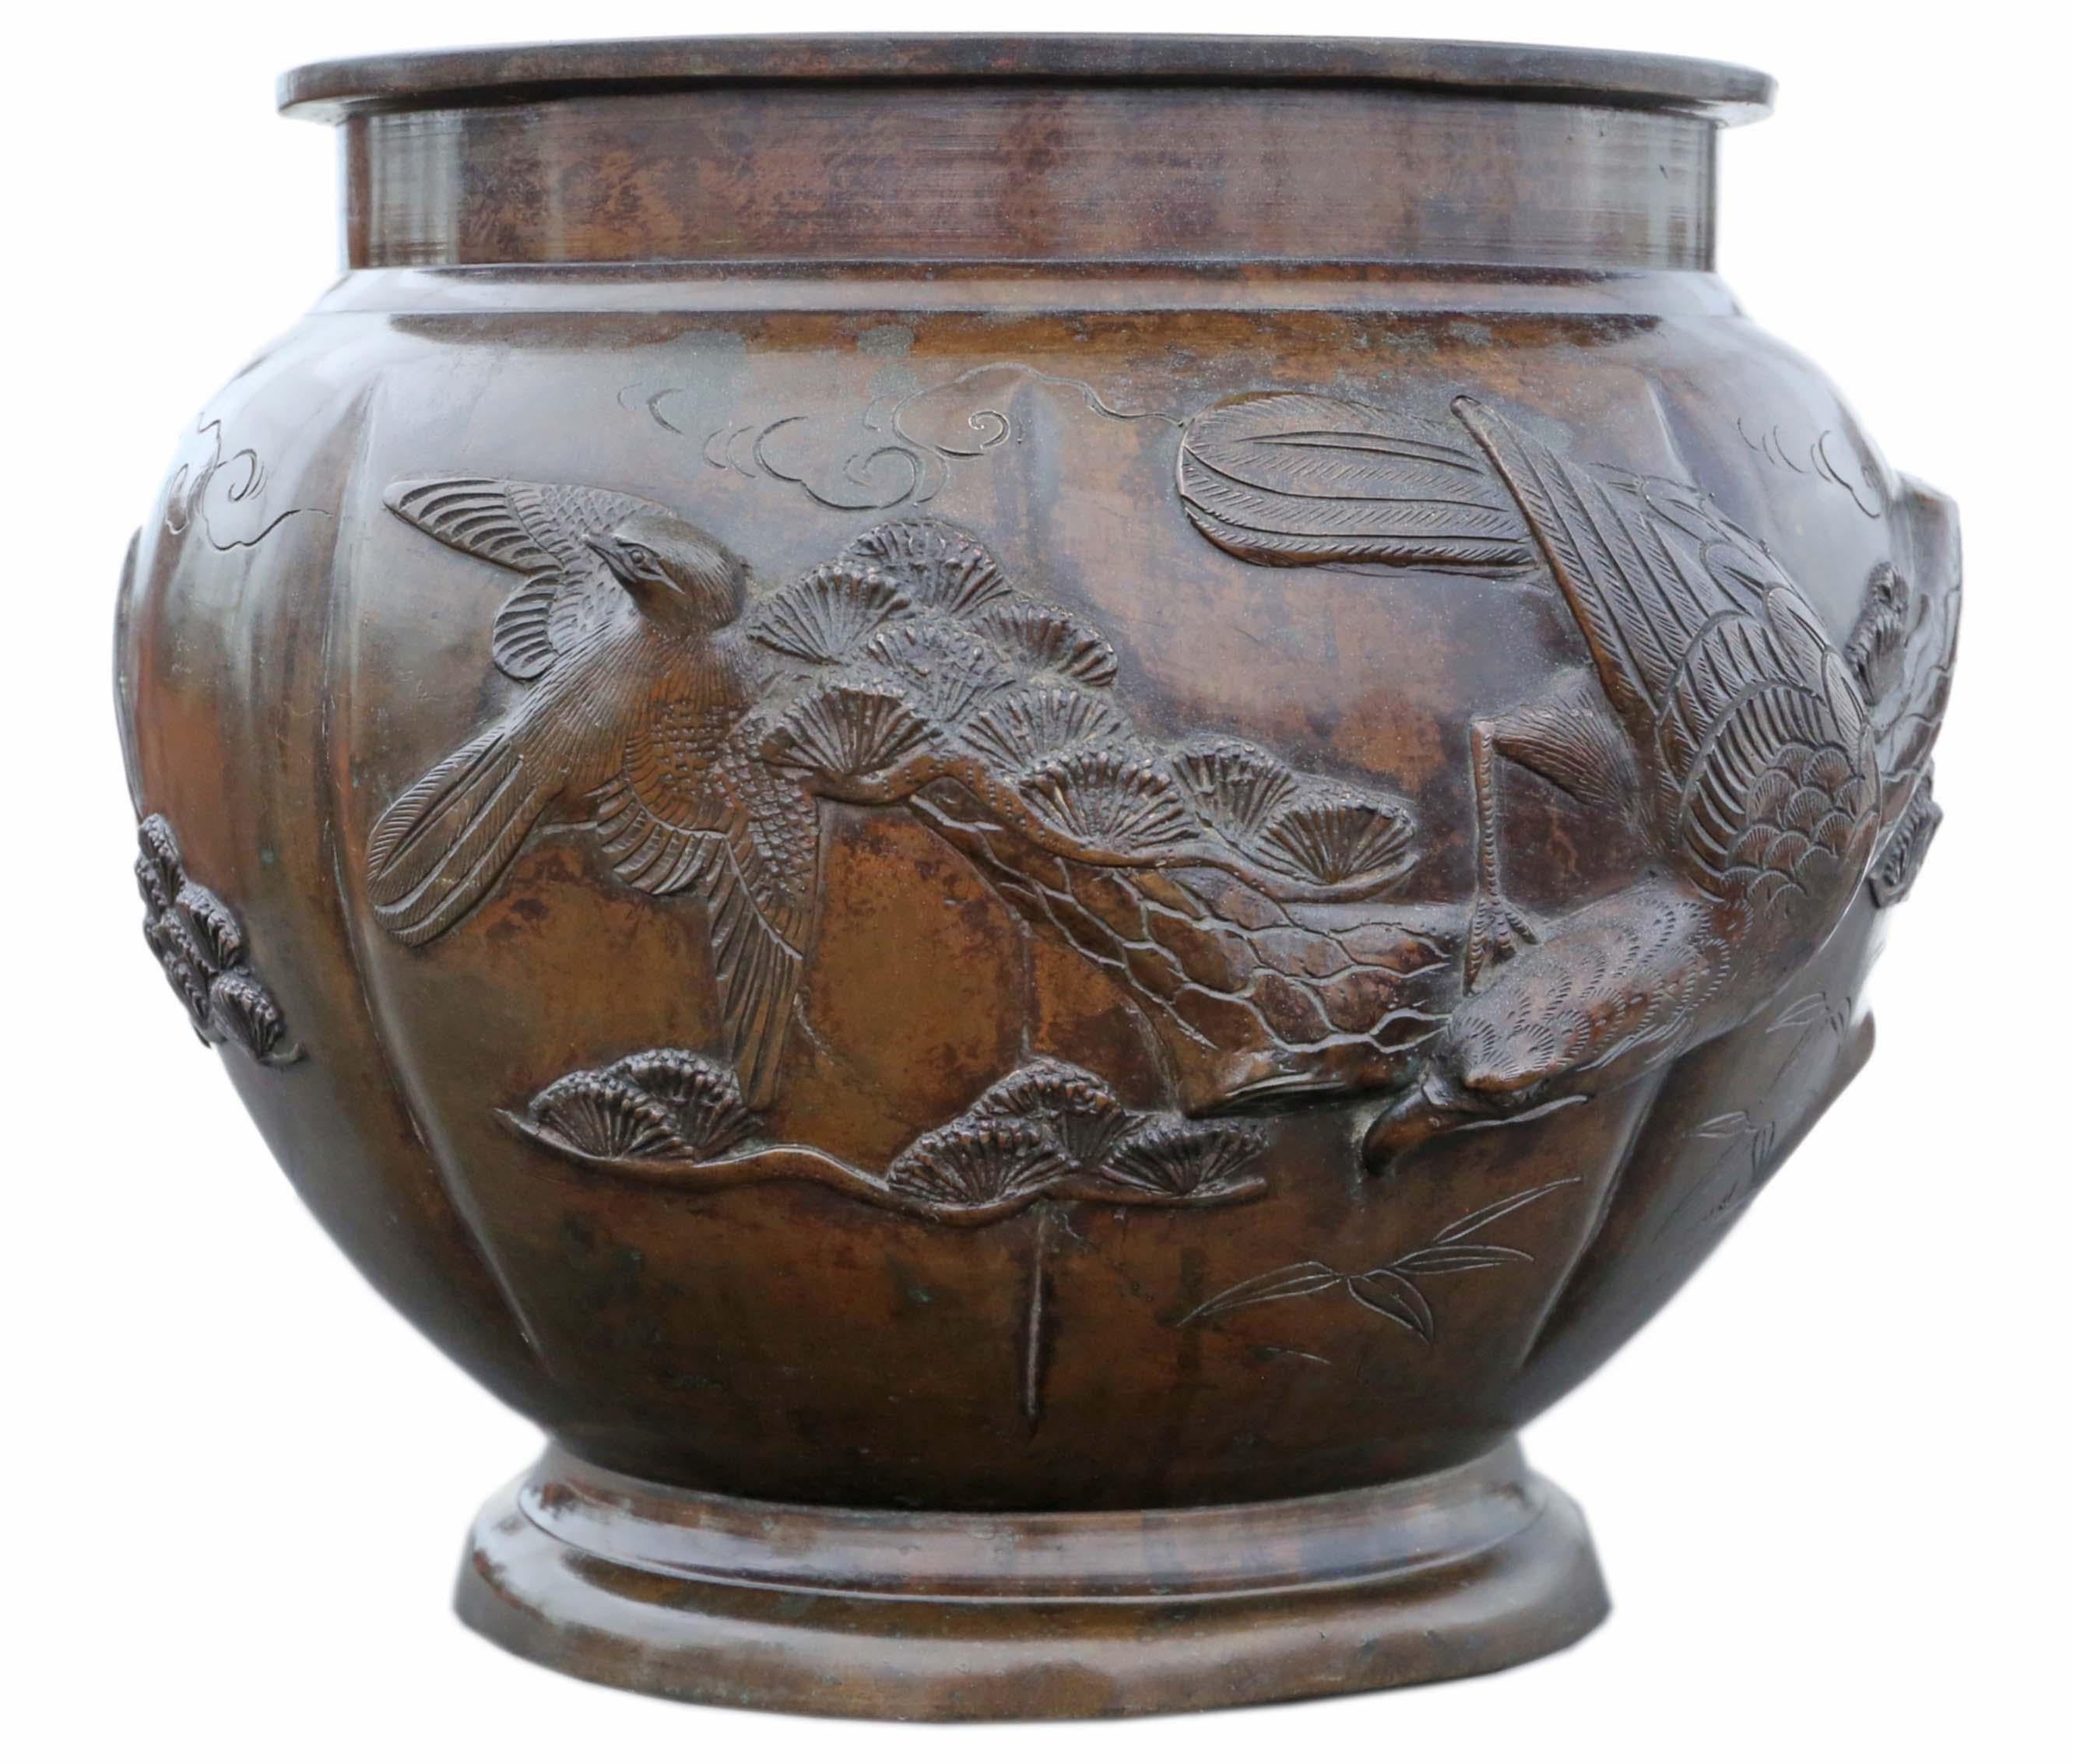 Antique Large Oriental Japanese Bronze Jardinière Planter Bowl Censor - Exquisite Meiji Period Piece !

Cette magnifique jardinière en bronze, datant de la période Meiji du XIXe siècle, témoigne de l'art et de l'élégance du Japon. Signé par